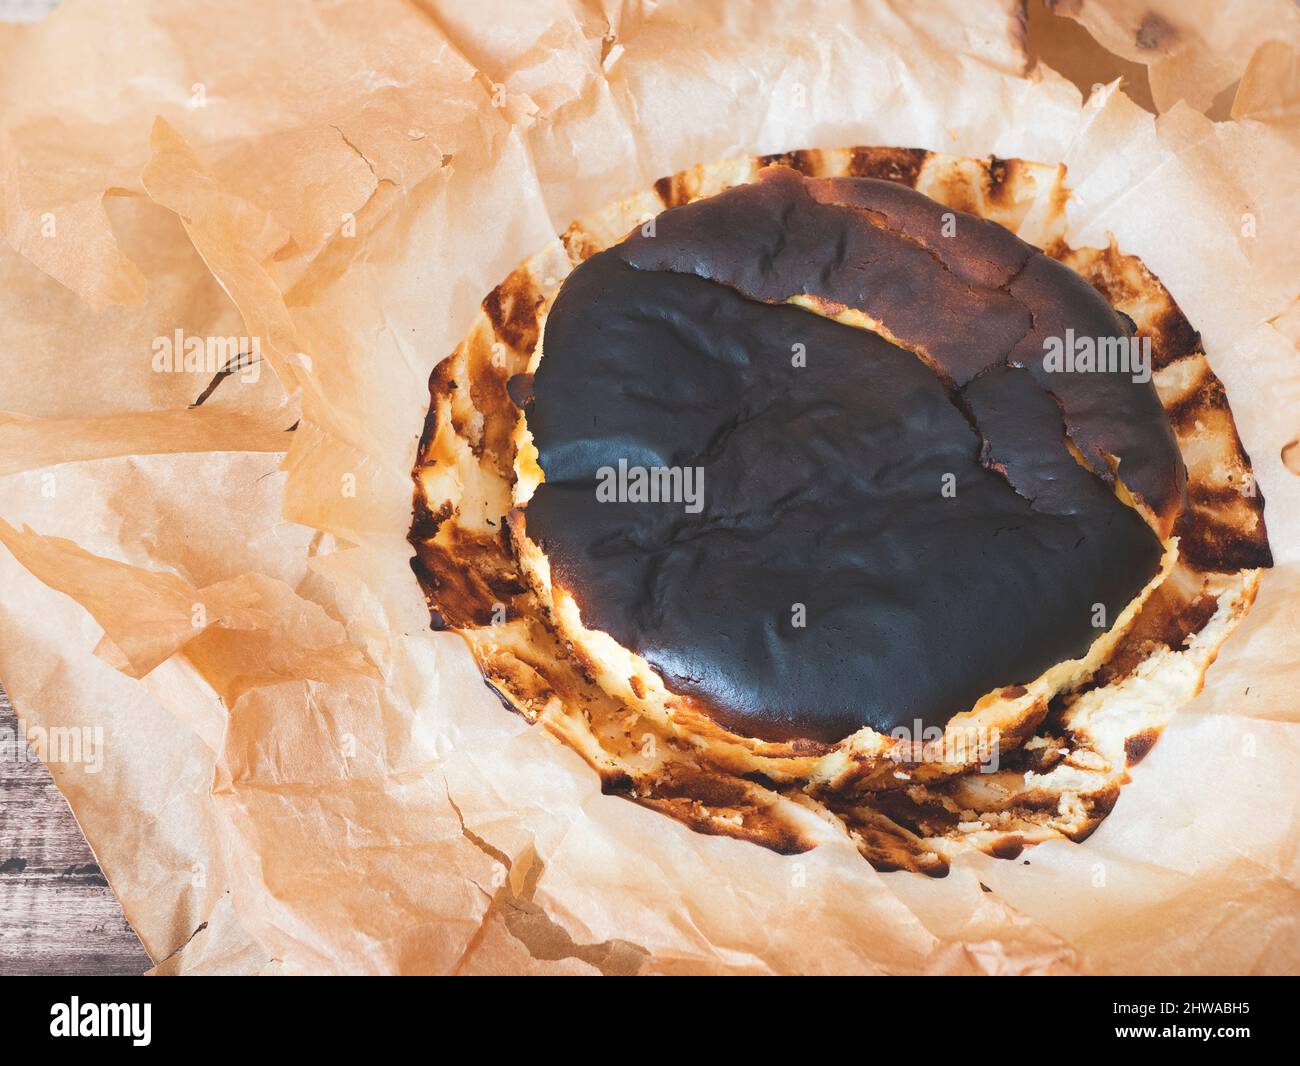 Baskischer gebrannter Käsekuchen mit sattem dunklem Oberteil. Spanischer Kuchen mit verbrannter Optik, Draufsicht Stockfoto